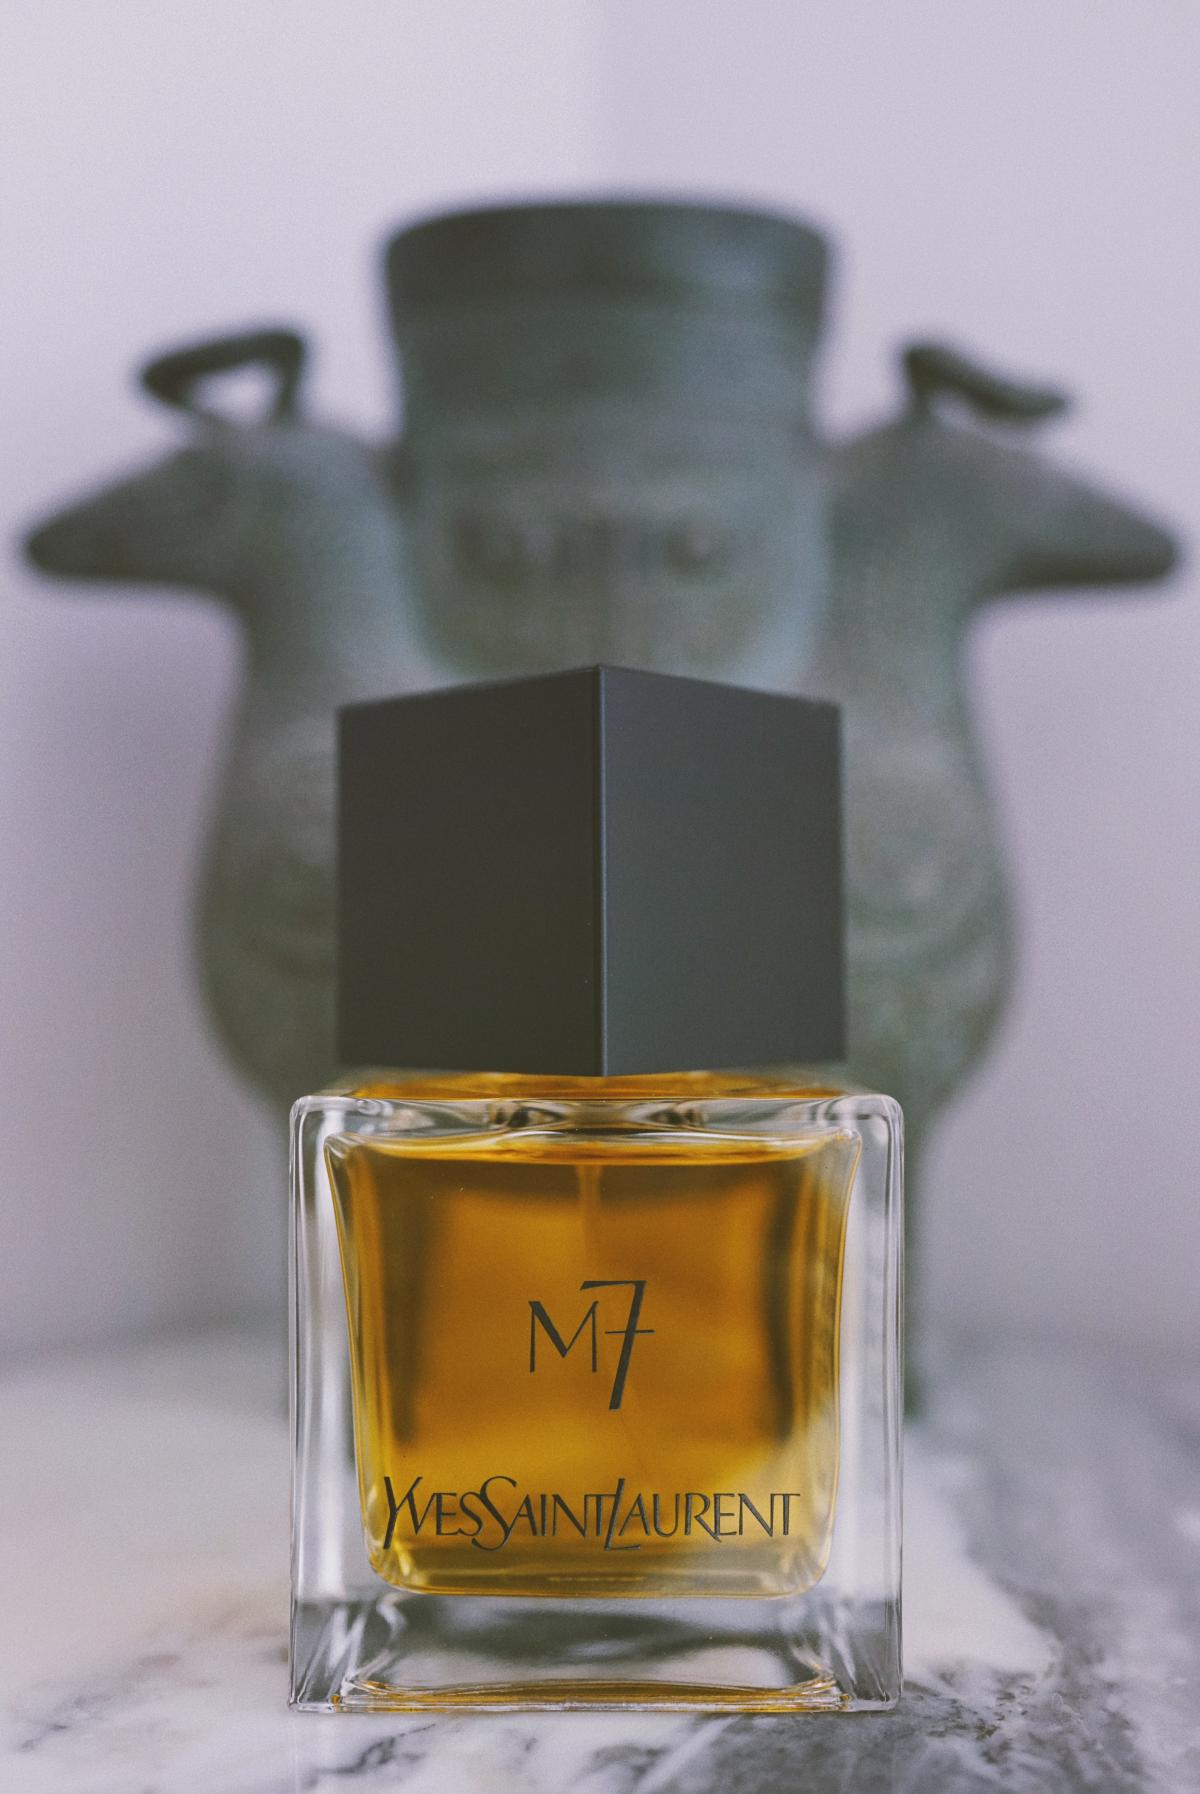 M7 Yves Saint Laurent Cologne - un parfum pour homme 2002